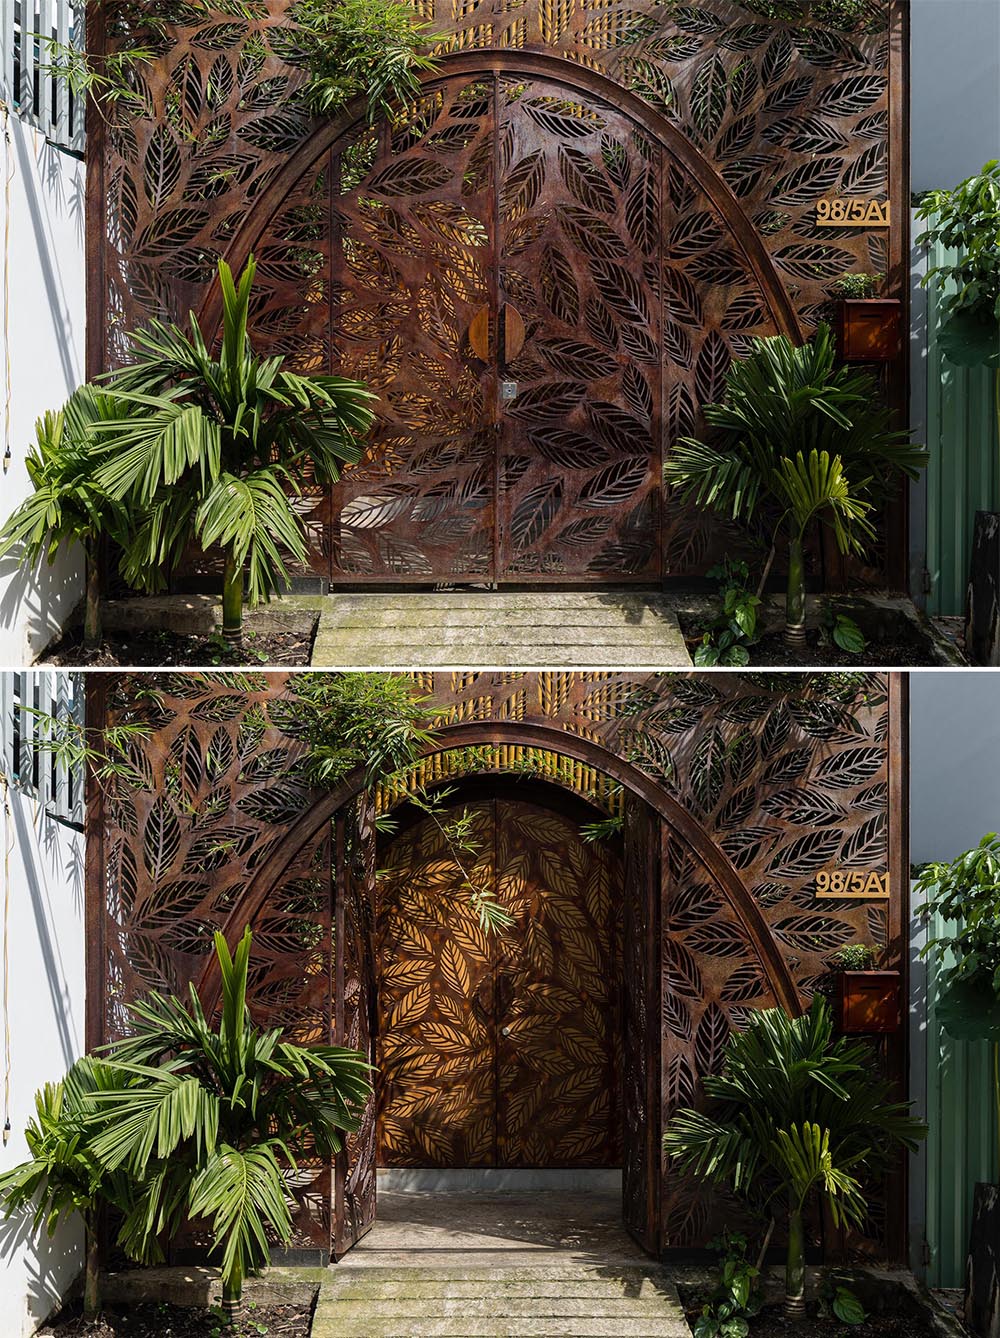 Металлические арочные двери с мотивом листьев встречают посетителей в этом современном доме.